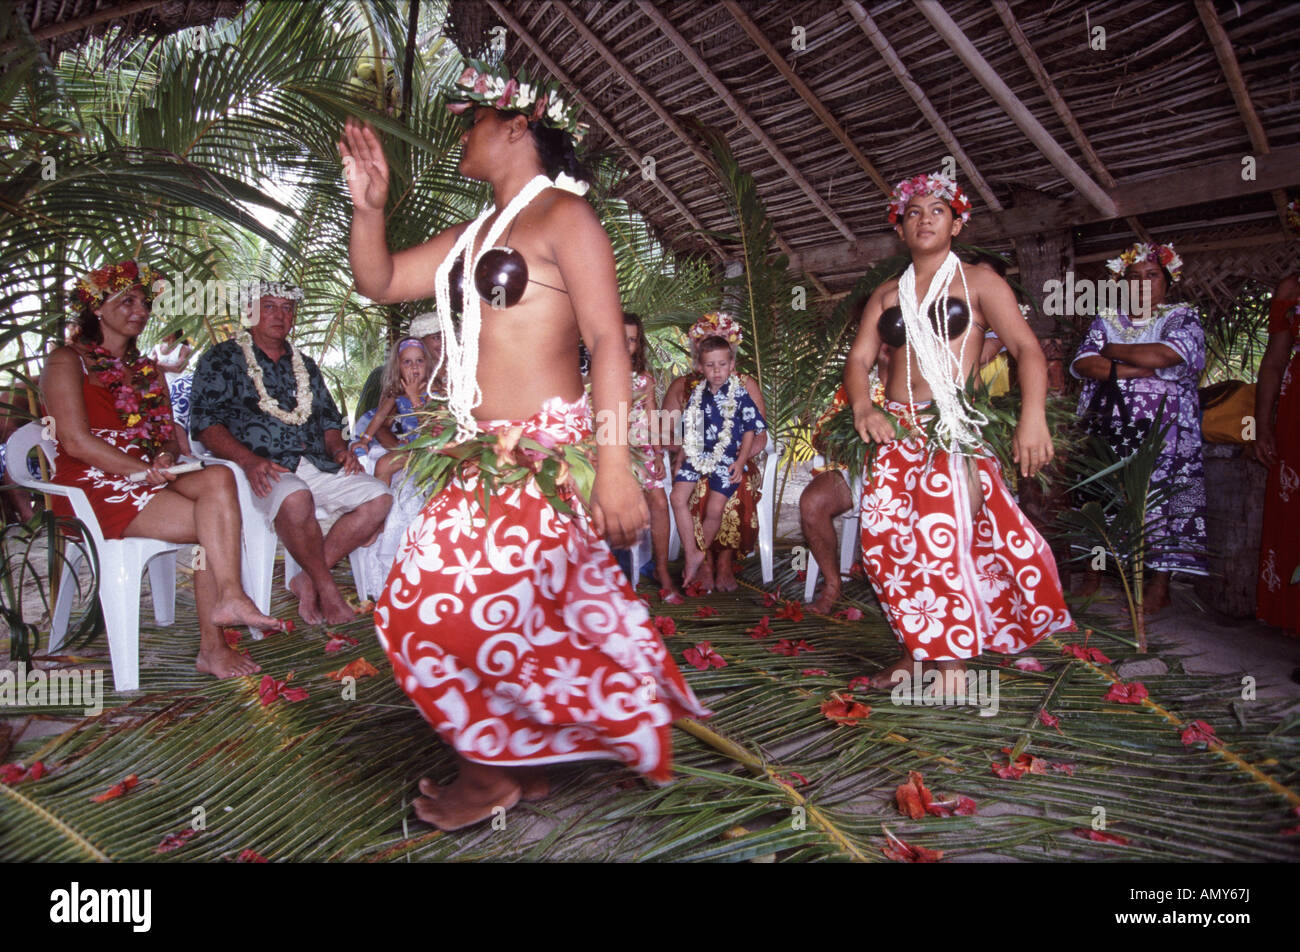 Danseuses de mariage du Pacifique Sud avec invités de mariage, île de Bora Bora Polynésie française Banque D'Images